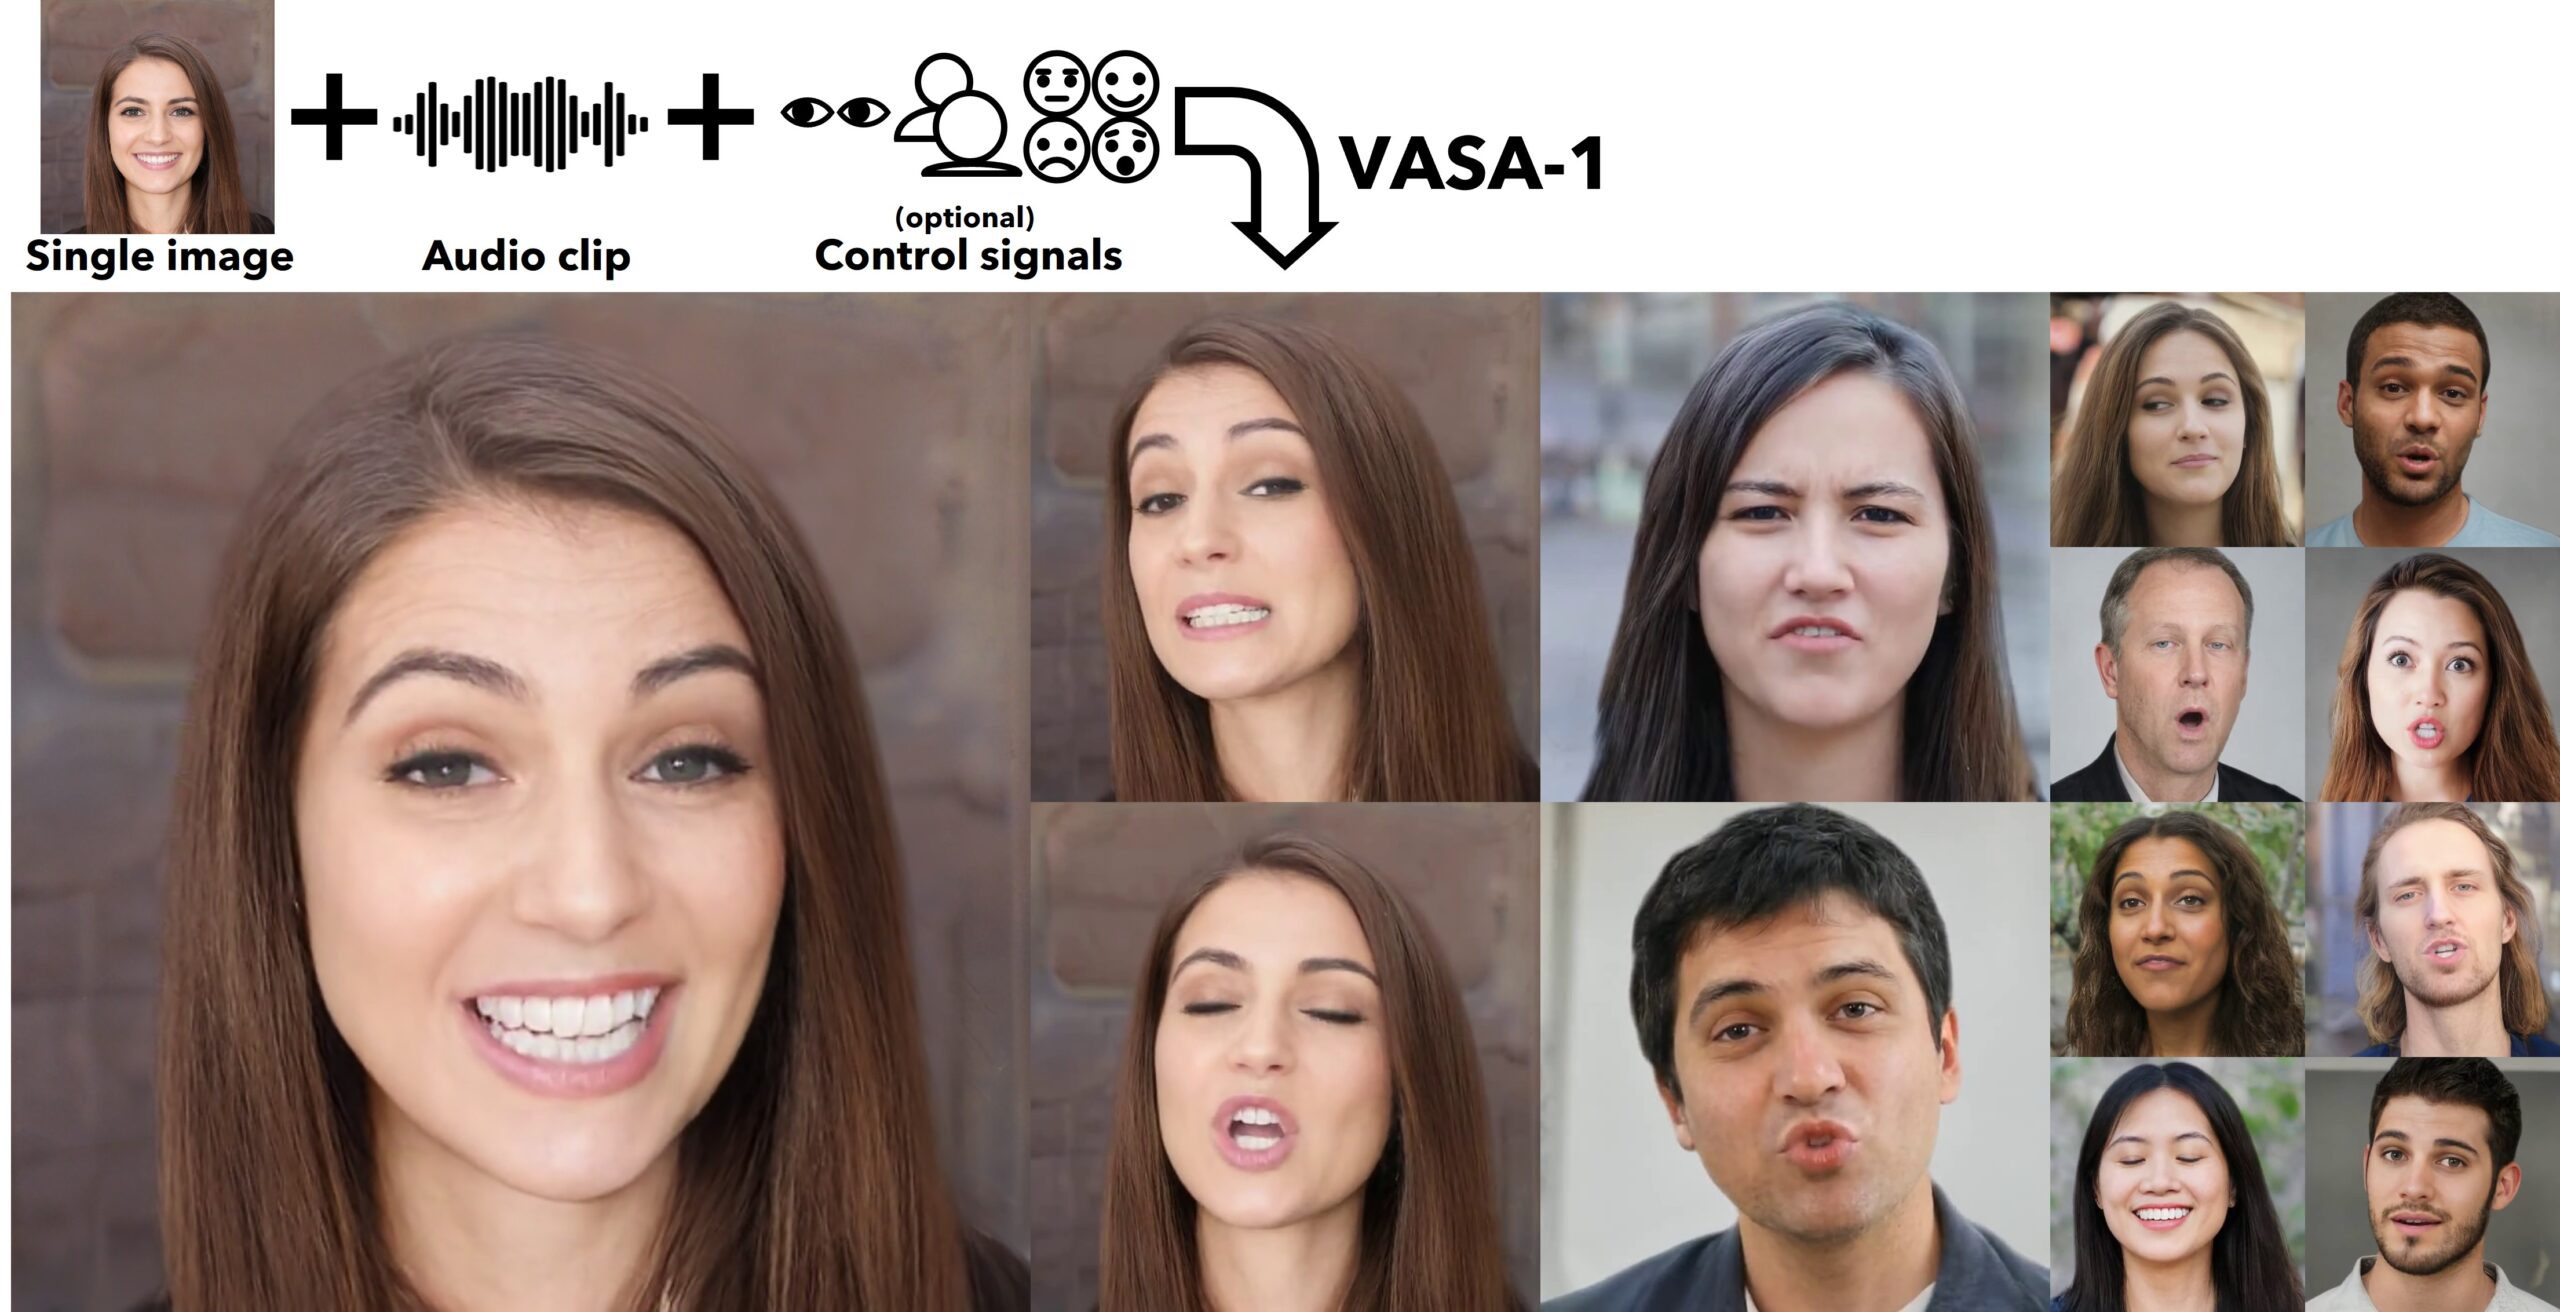 VASA-1 de Microsoft: Avatares hiperrealistas para nuevos horizontes en la IA